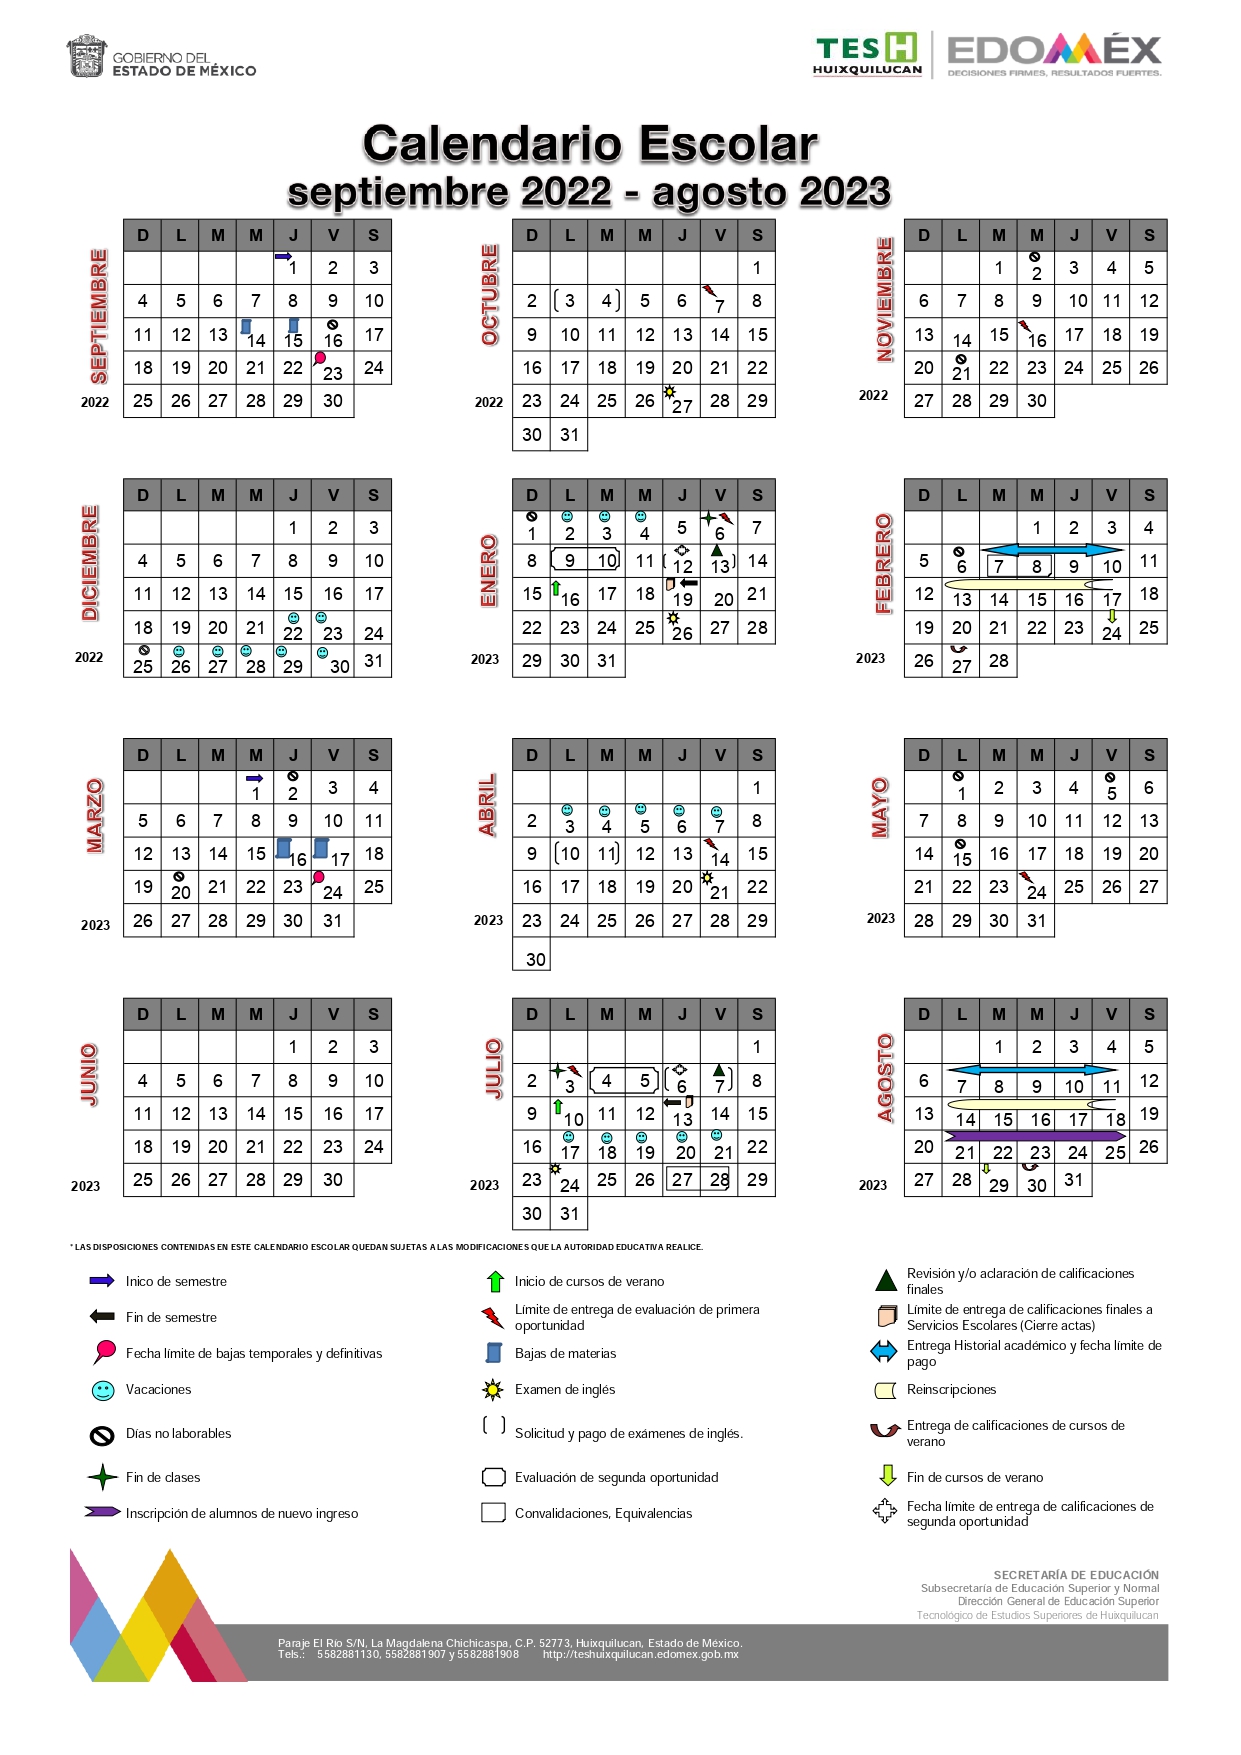 Calendario Escolar 2022 A 2023 Tecnologico Nacional De Mexico IMAGESEE